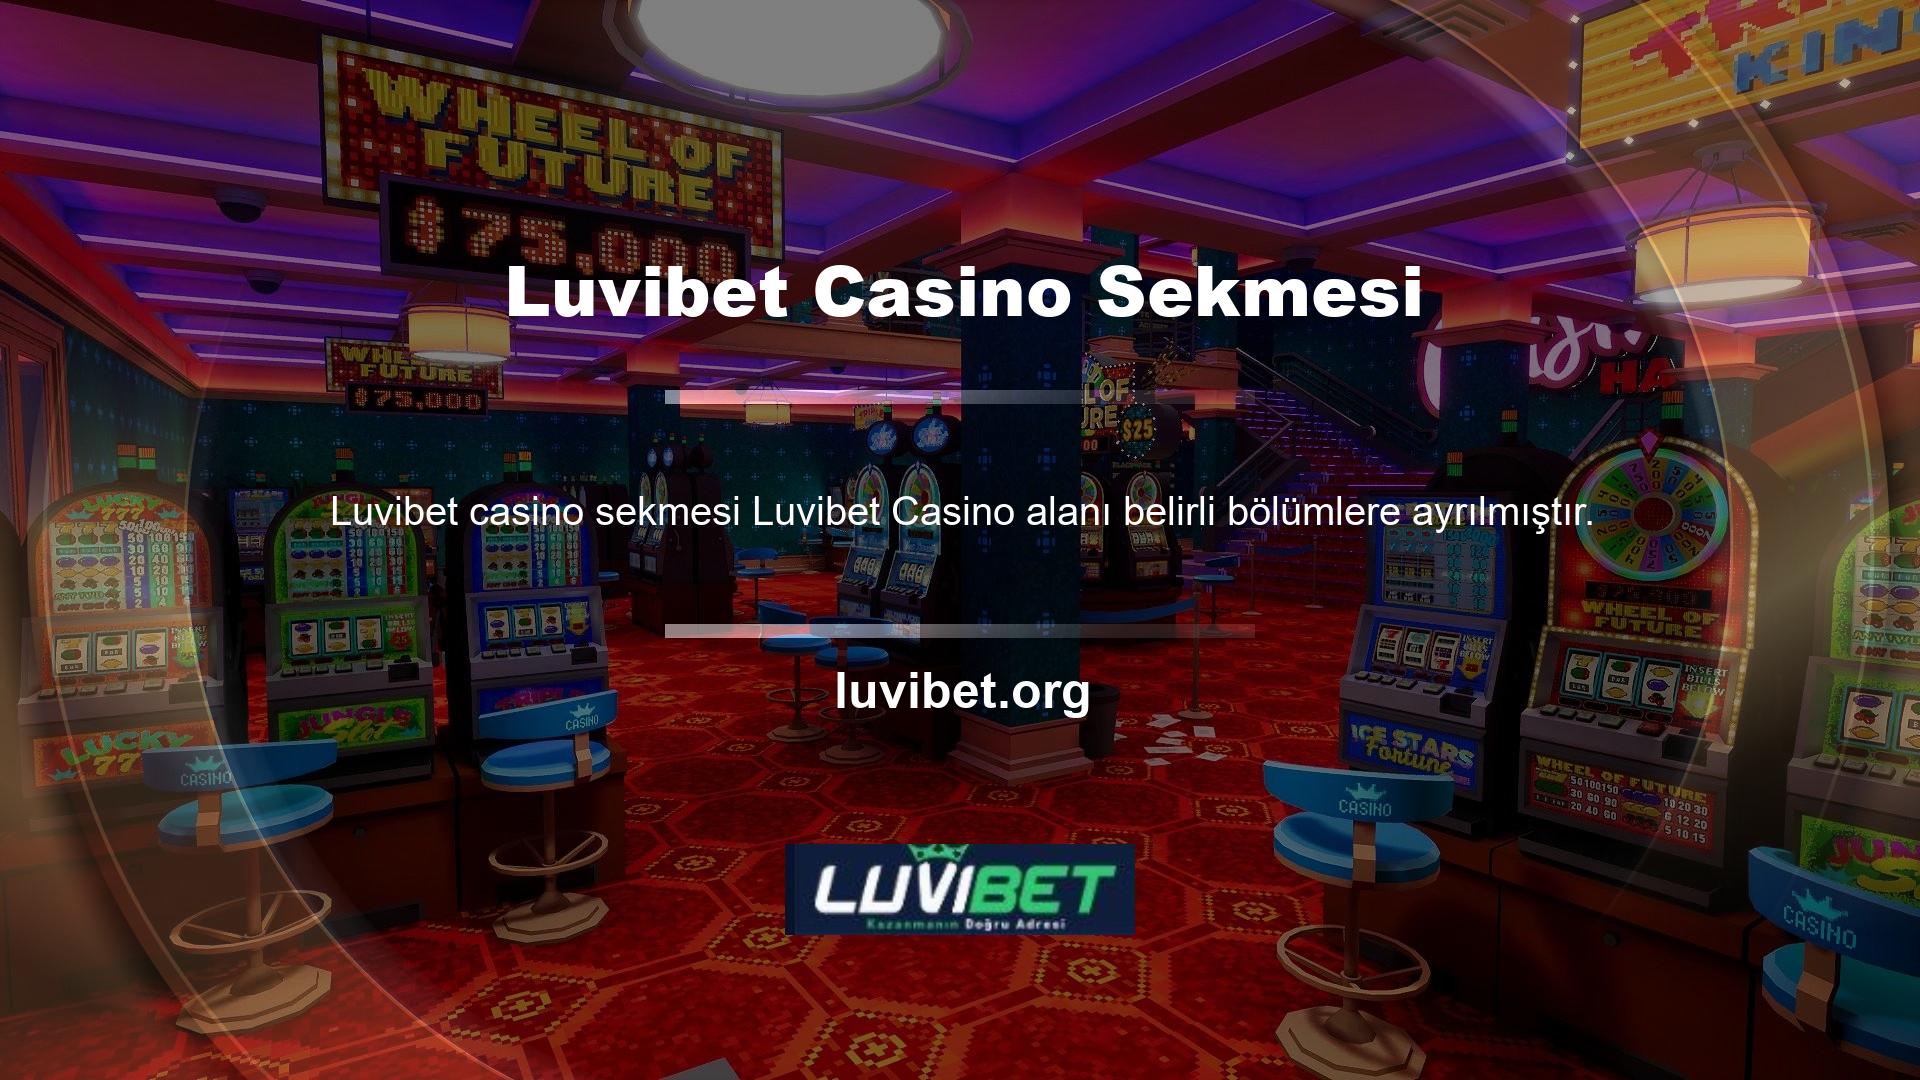 Avivator, Canlı Casino gibi üç temel sekme altında bulunabilen sanal oyunlardan biridir